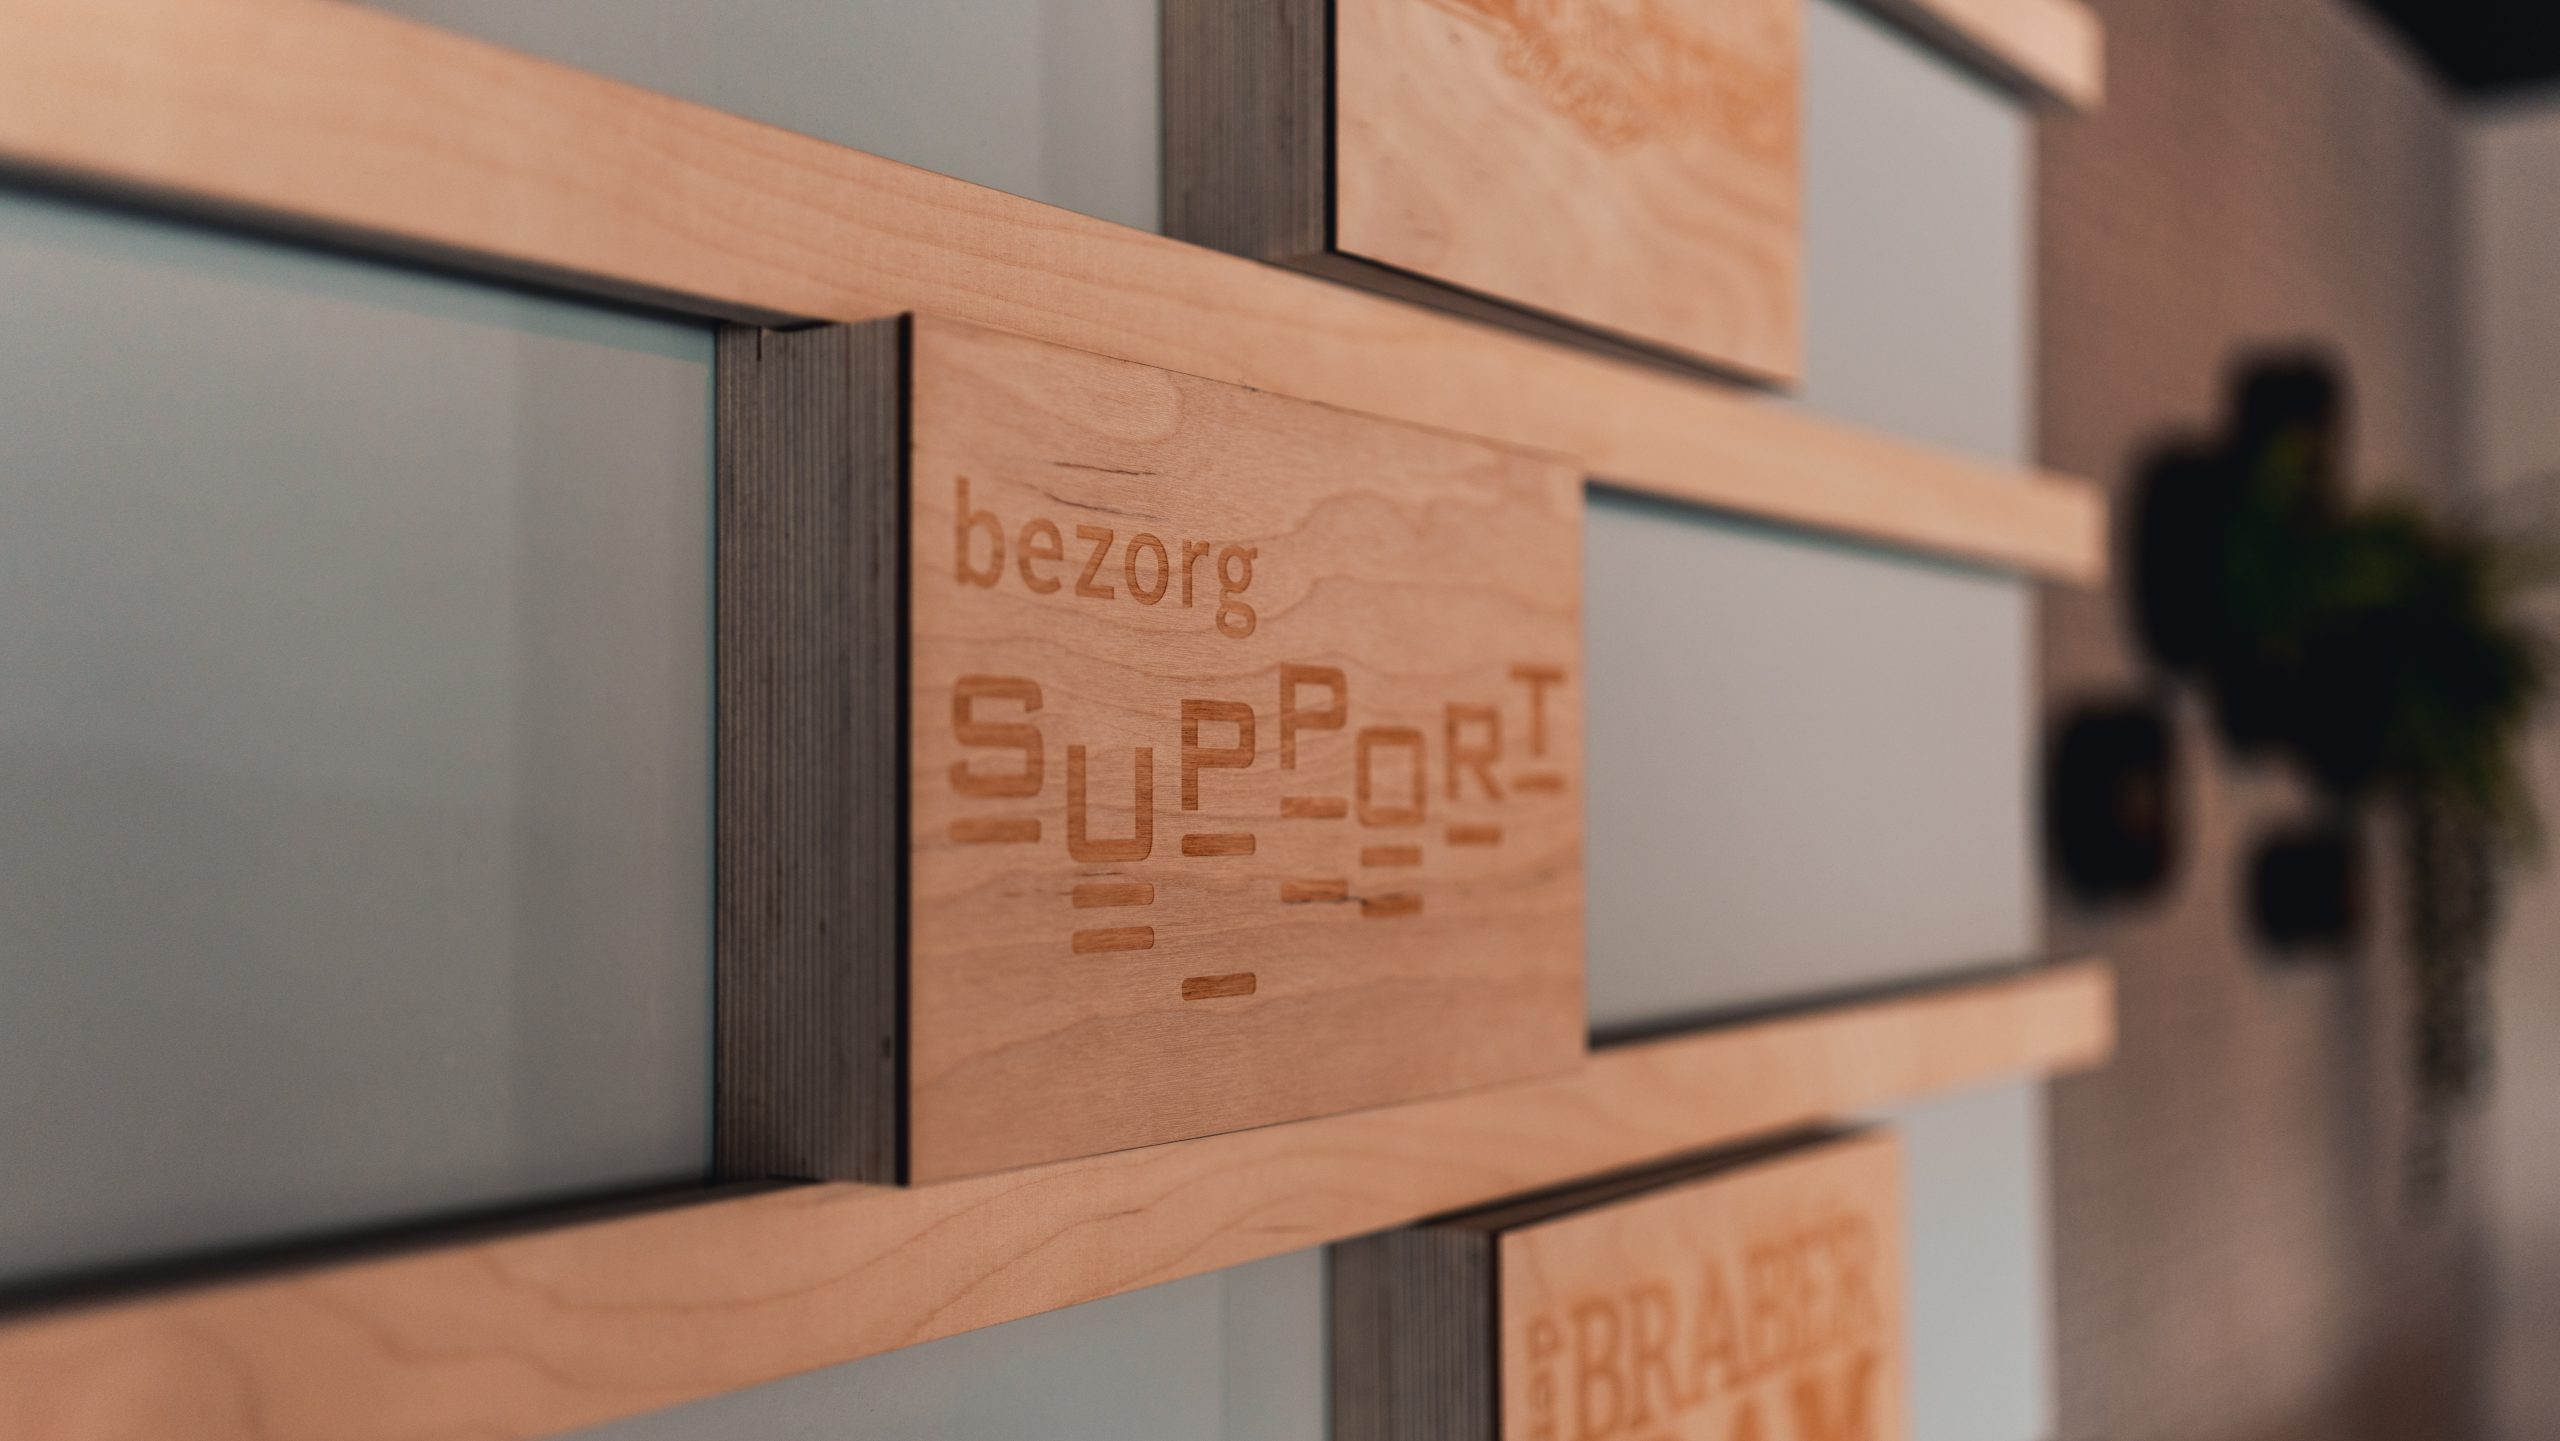 Bezorg Support kassasystemen bezorgsystemen en IT service voor MKB retail & horeca